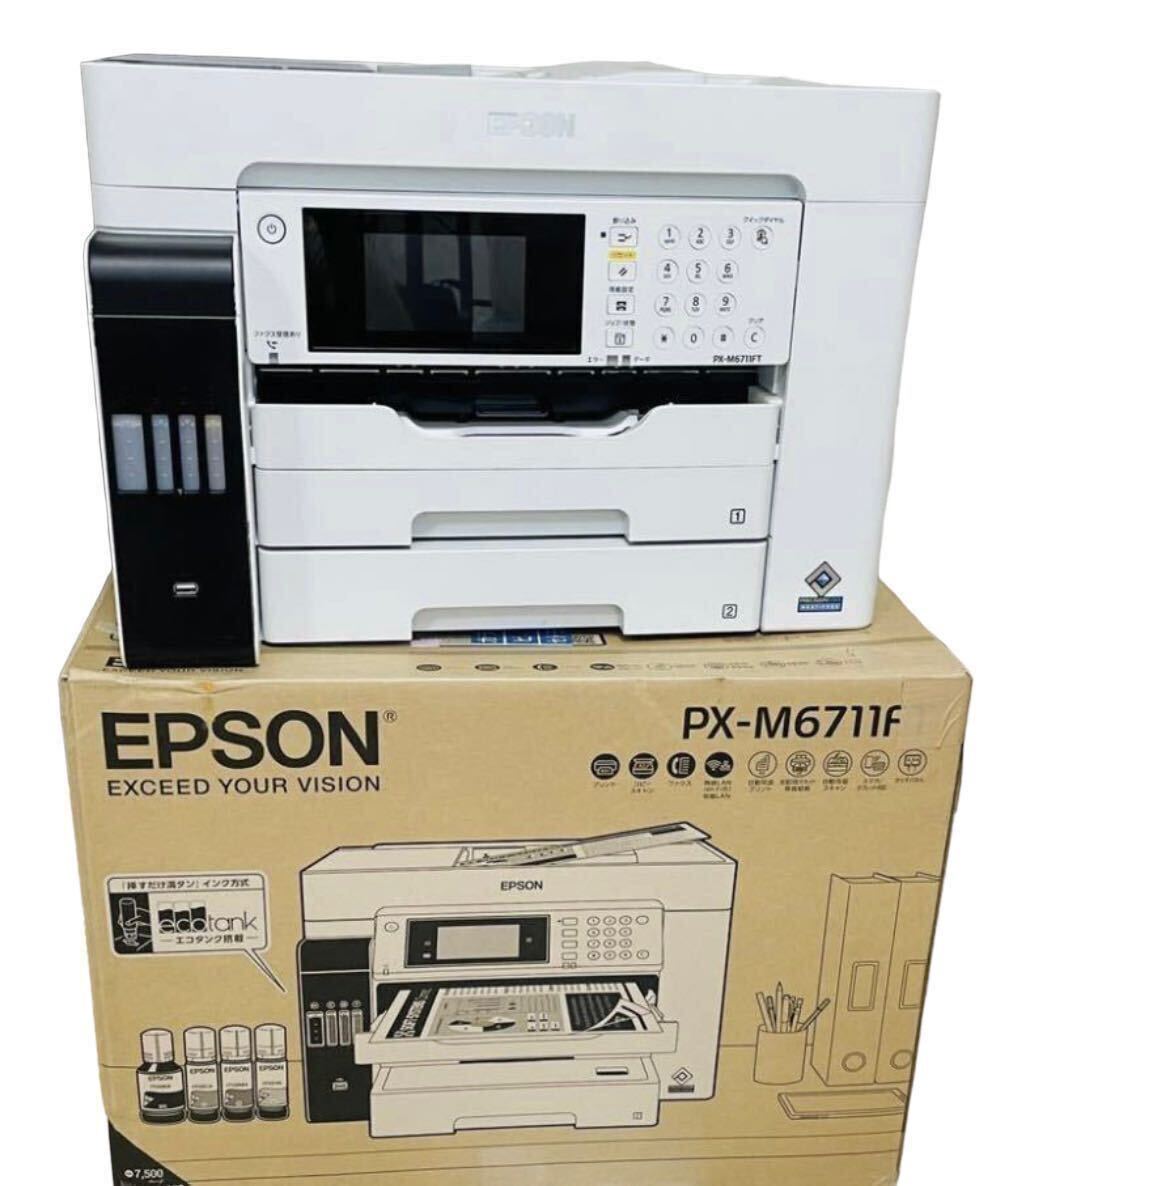 EPSON/エプソン PX-M6711FT A3対応ビジネスインクジェット複合機 エコタンク搭載モデル_の画像4